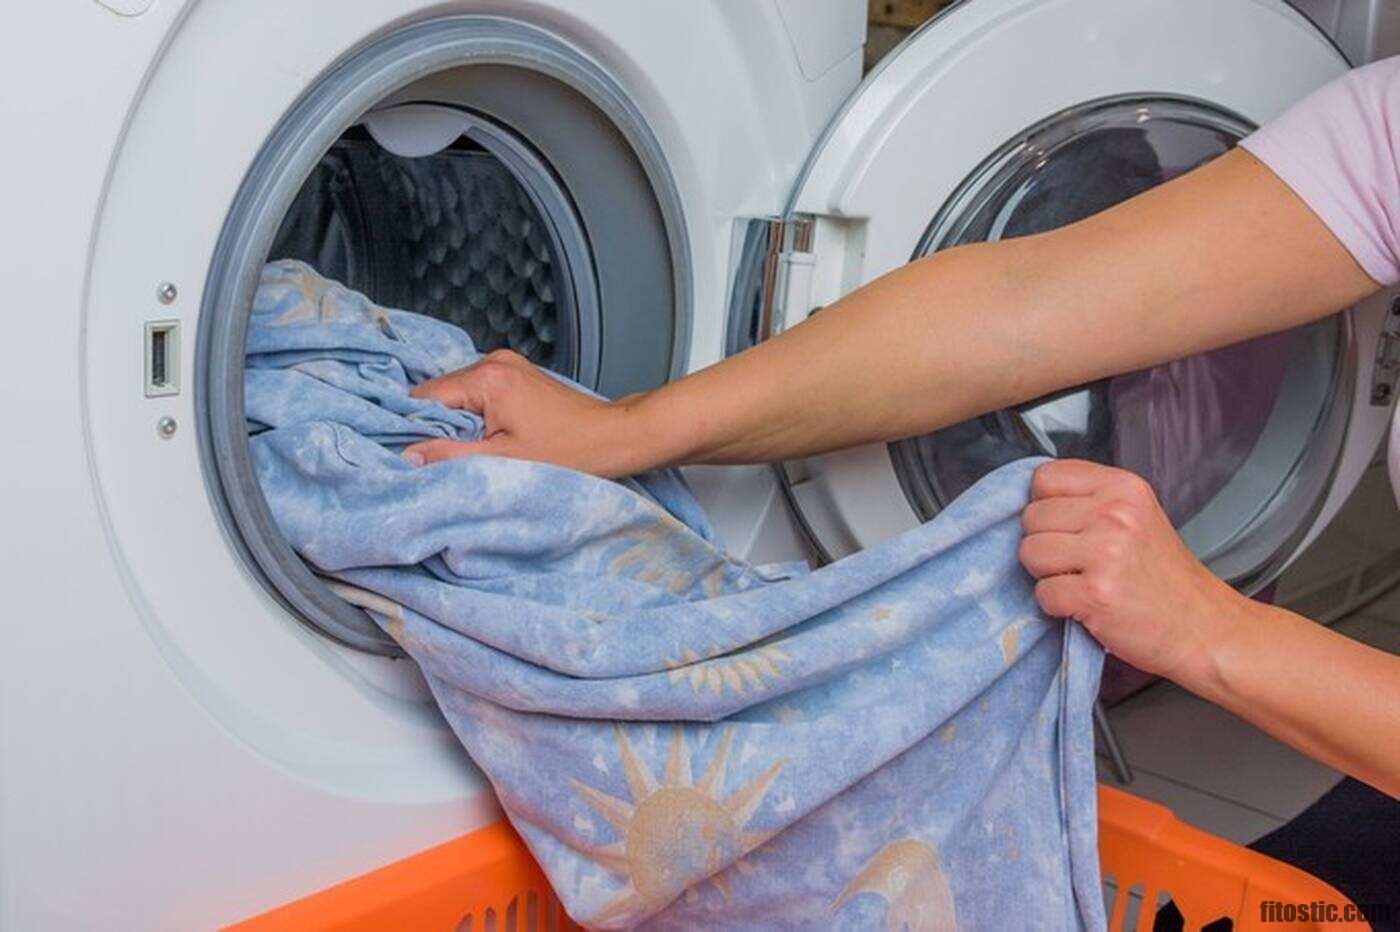 Comment sont laver les vêtements au pressing ?